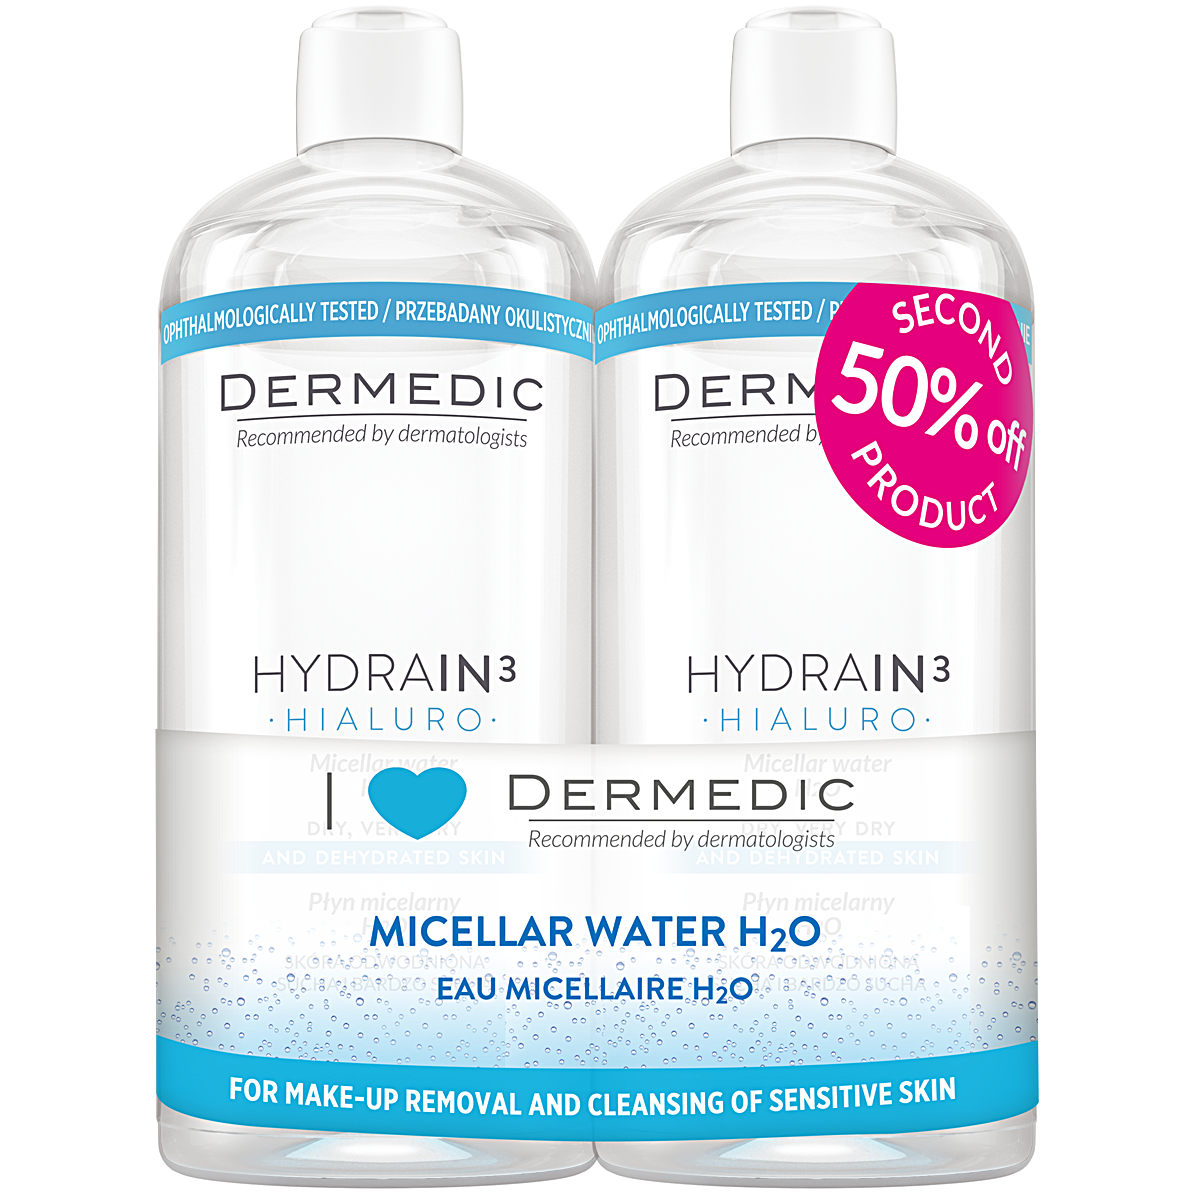 Мицеллярная жидкость h2o Dermedic Hydrain3 Hyaluro, 2х500 мл dermedic мицеллярная вода h2o 500 мл х2 шт dermedic hydrain3